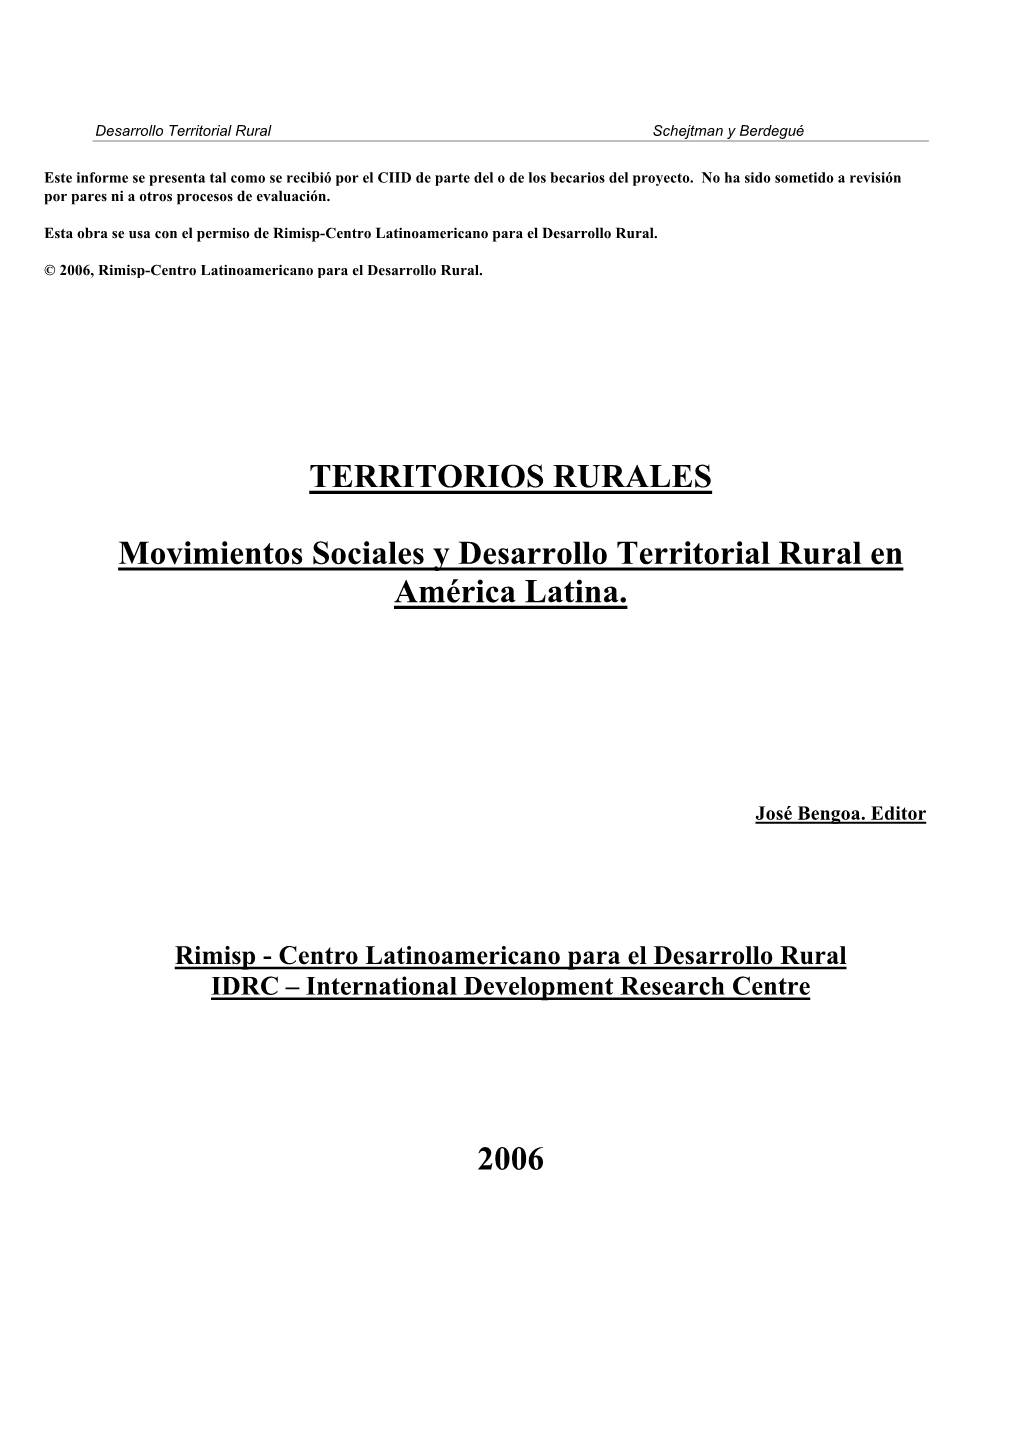 TERRITORIOS RURALES Movimientos Sociales Y Desarrollo Territorial Rural En América Latina. 2006